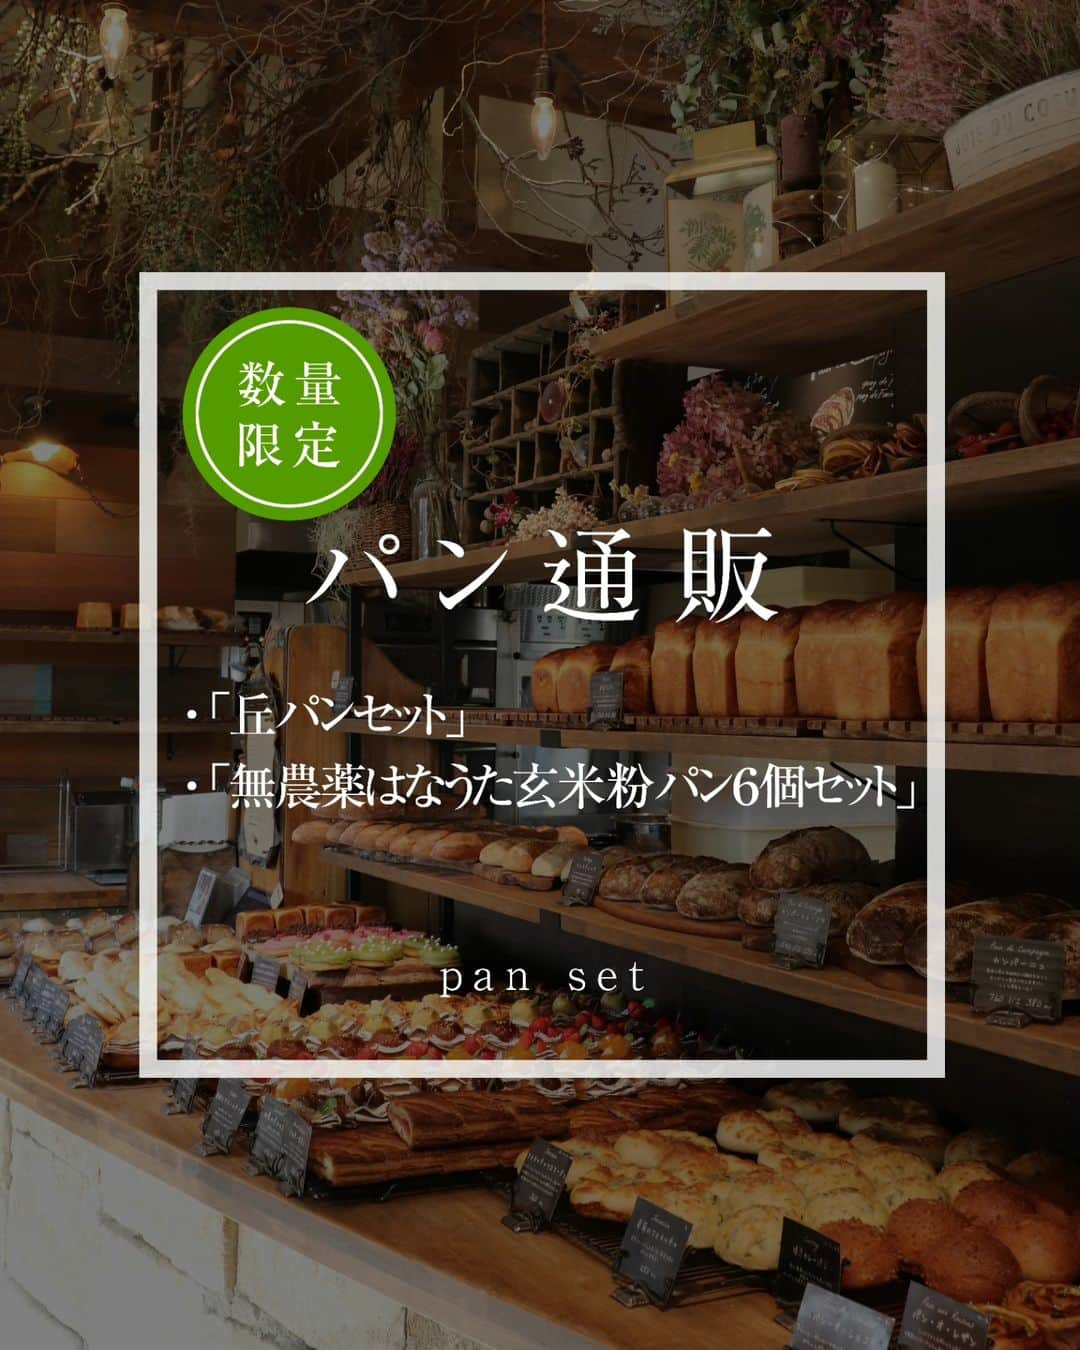 丘の上のパン屋 のインスタグラム：「2023.11.11  丘の上のパン屋です。  本日21時より、数量限定で ・「丘パンセット」 ・「無農薬はなうた玄米粉パン６個セット」  のカートオープンさせていただきます。 ぜひよろしくお願いします。  商品ページは、プロフィール（@okanouenopanya）のURLからご確認頂けます。 配送日時指定は出来ませんのでご了承ください。  売切れ次第、今回分の募集は終了となります。 次回の応募の際はInstagramなどで告知させていただきます。  https://okanouenopan.base.ec/  −−−−−−−−−  💬 一人の職人がひとつひとつ丁寧にパンを焼いています。  数には限りがございますことご了承ください。  一番パンの種類が揃っているのは、9:30〜11:30頃です。 詳しくは、サイト内「パンの焼き上がり時間」をご確認下さいませ。  −−−−−−−−−  💬 ご予約について  ●予約可能商品 ・食パン(9:30/14:00) ・カンパーニュ ・バゲット ・エッグタルト ・無農薬玄米粉パン ・シュトーレン  ※一升パン (※は木、金のお渡しになります)  📞 045-530-9683（クロワッサン🥐）  焼き上がり時間 プロフィール欄のURLから確認出来ます。  −−−−−−」